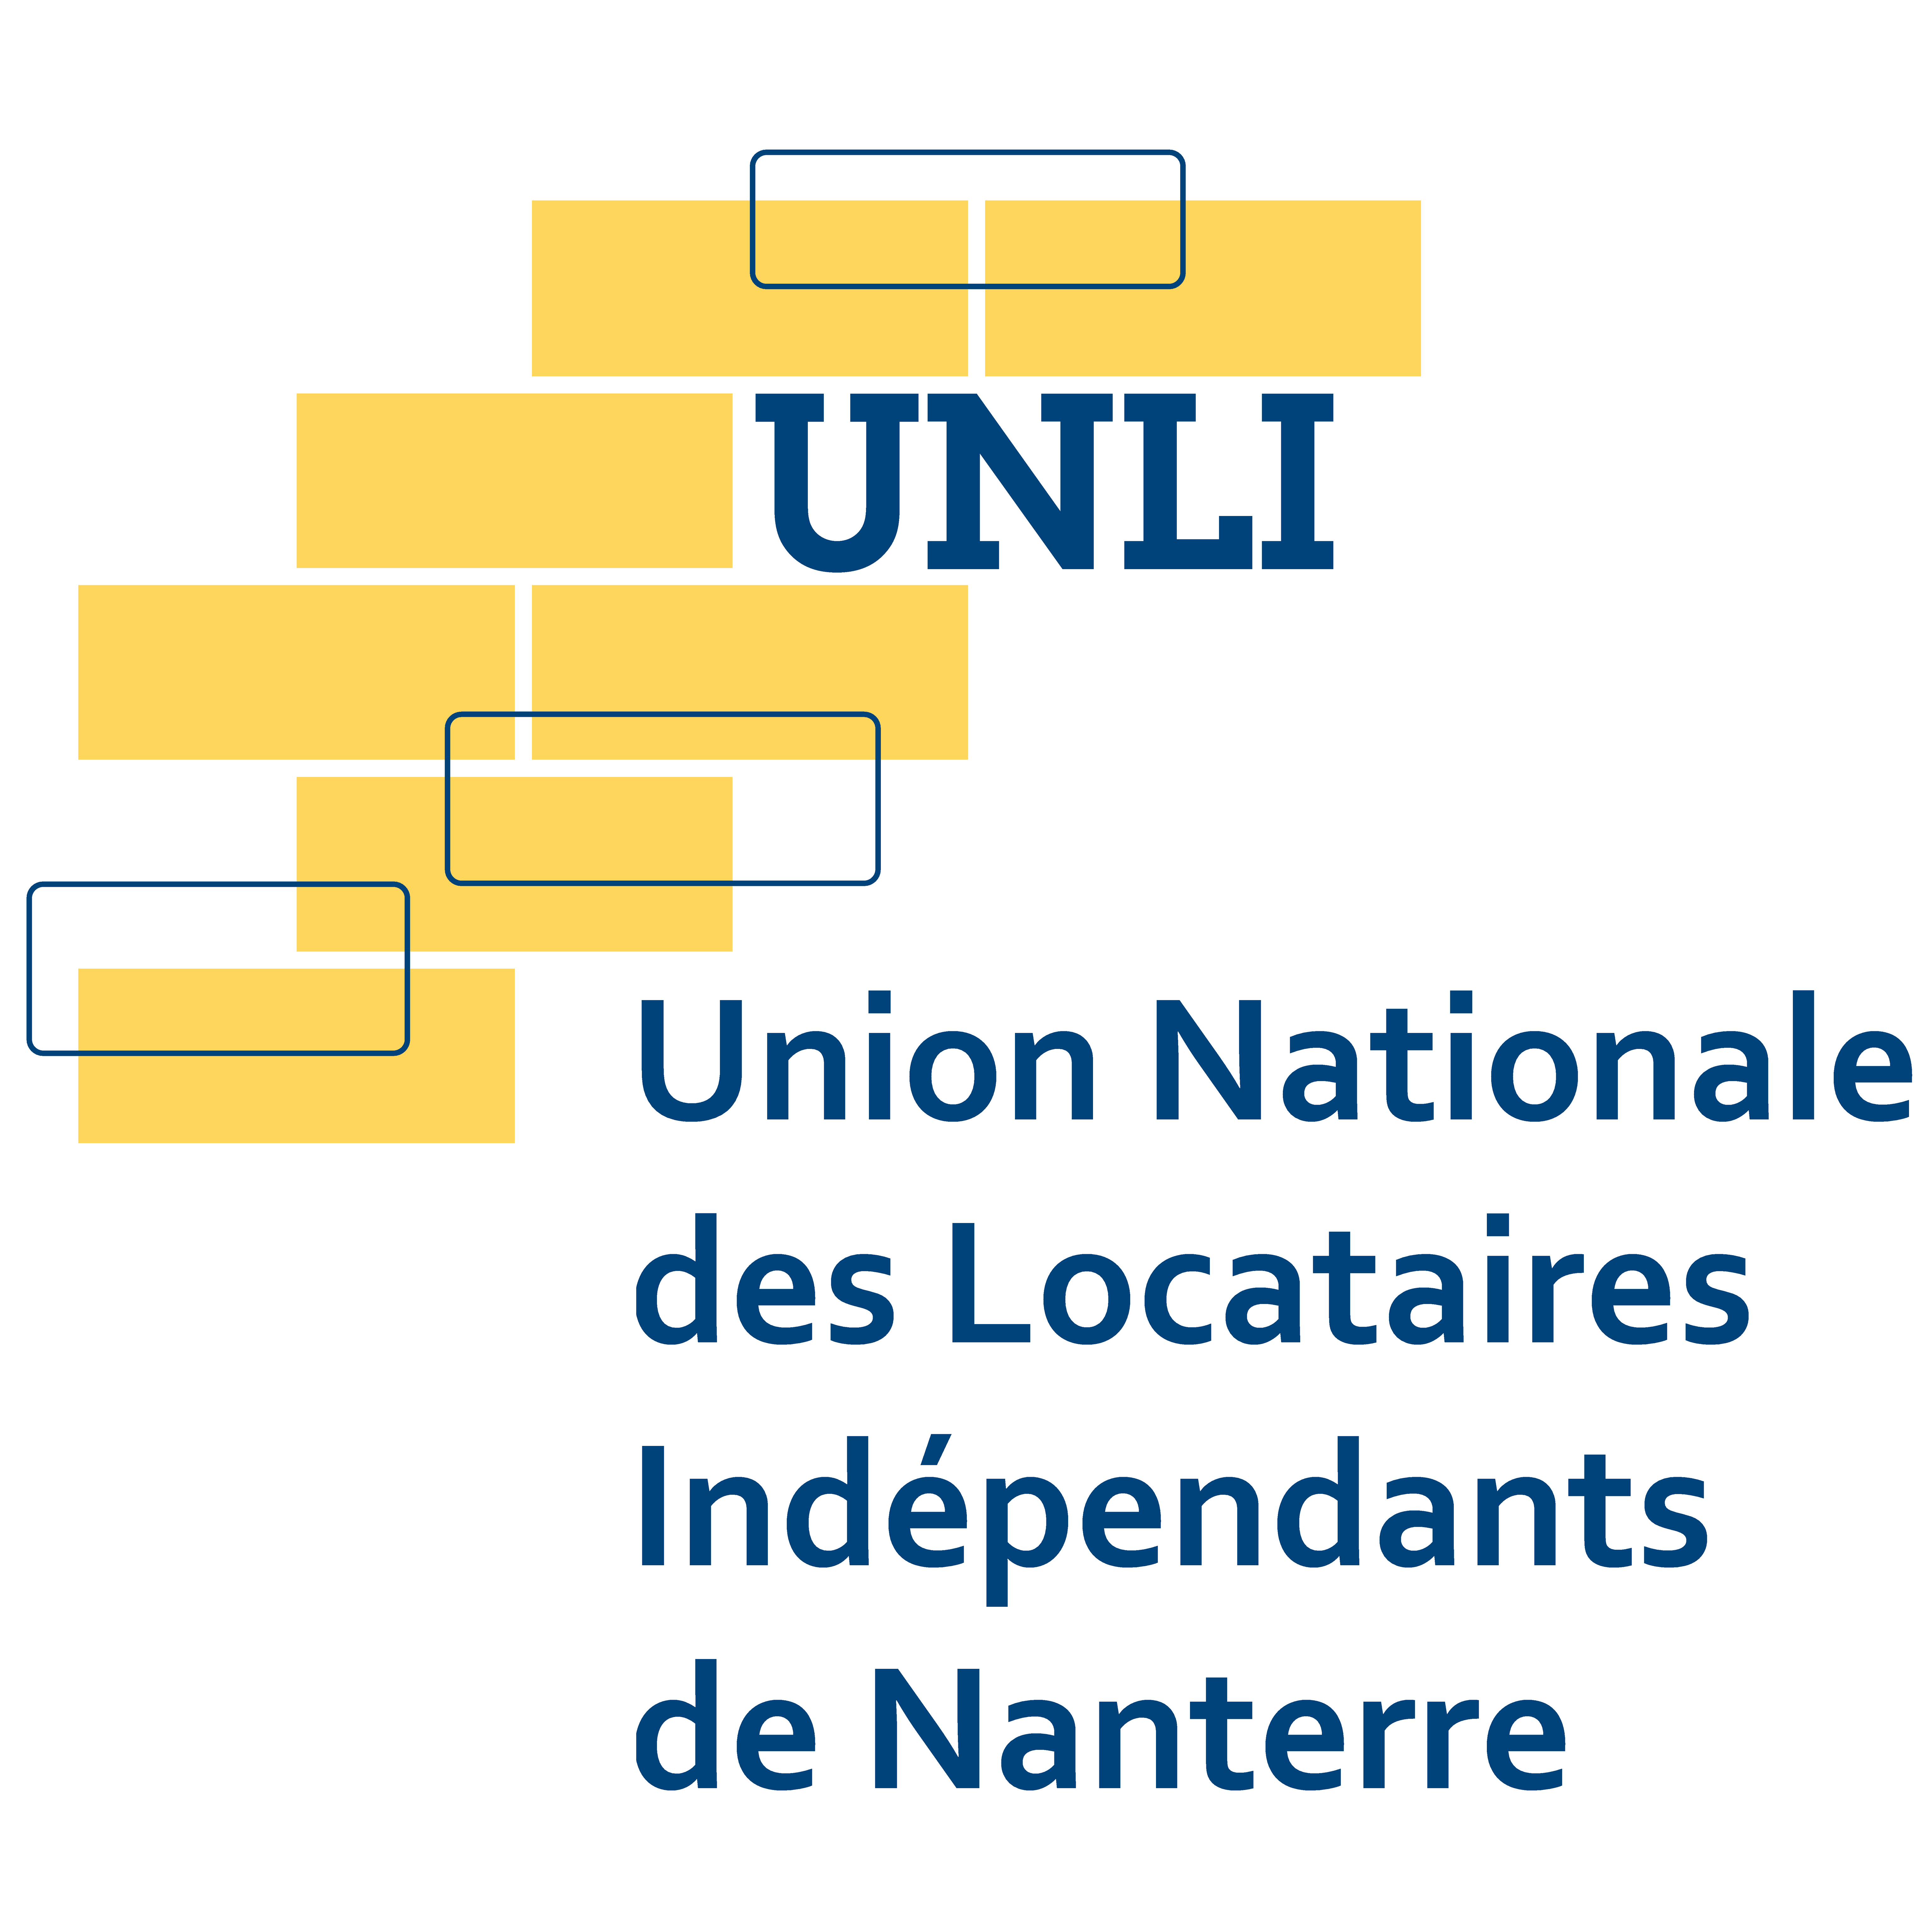 UNION NATIONALE DES LOCATAIRES INDEPENDANTS DE NANTERRE